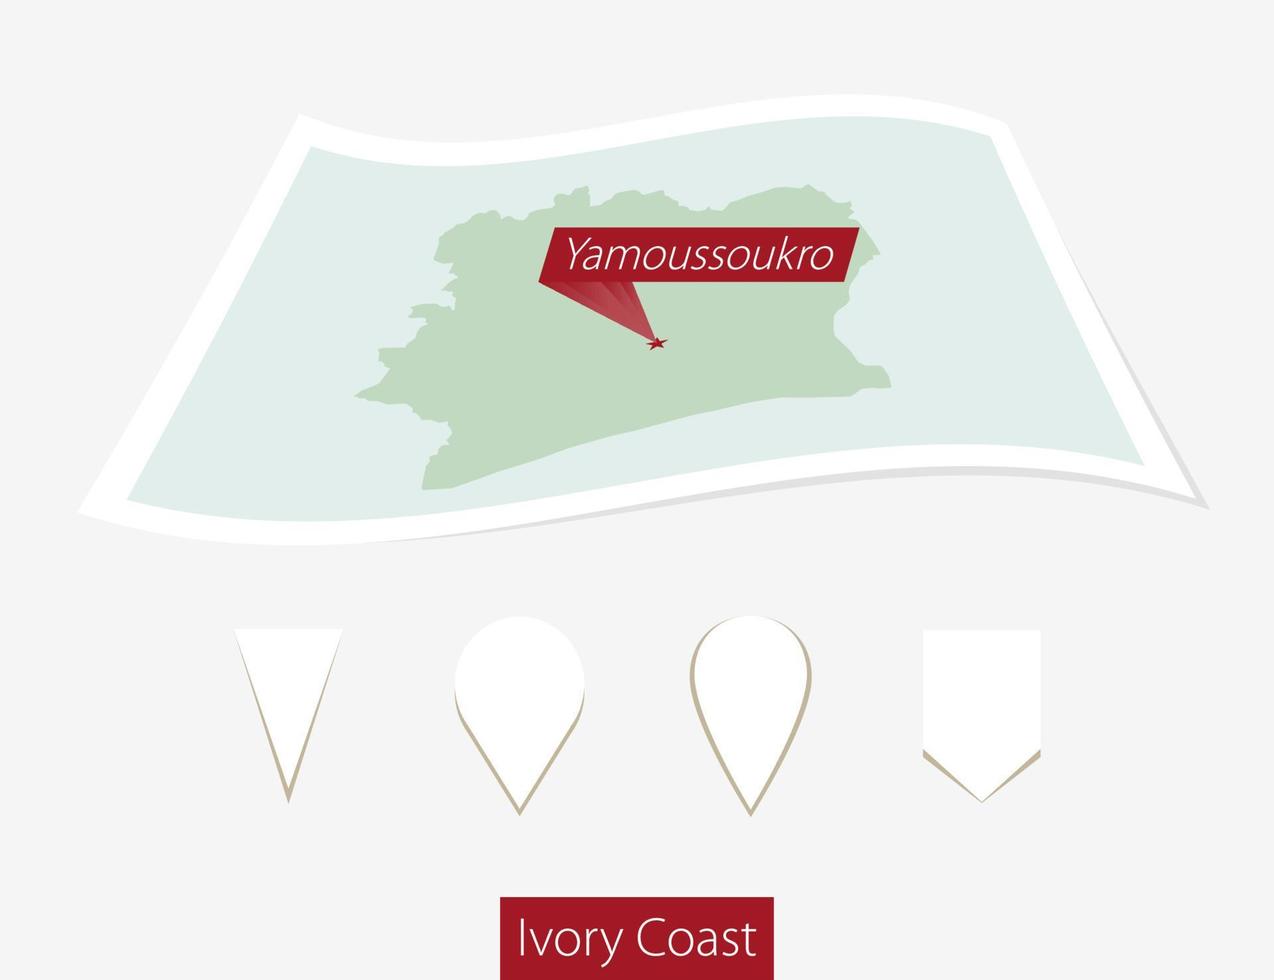 böjd papper Karta av elfenben kust med huvudstad yamoussoukro på grå bakgrund. fyra annorlunda Karta stift uppsättning. vektor